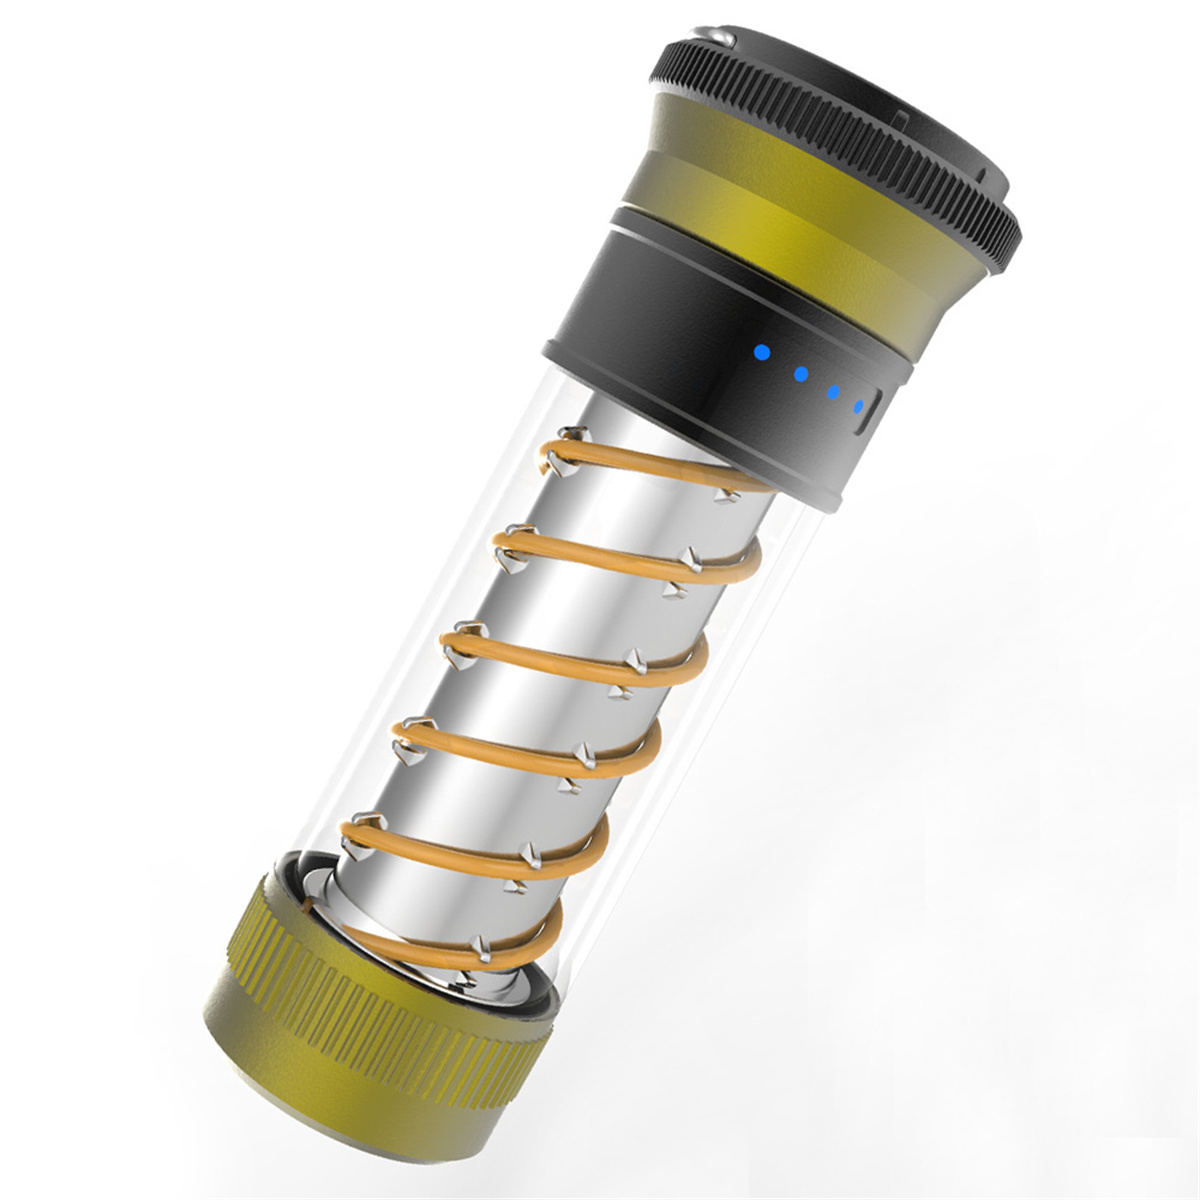 UWOT Outdoor-Taschenlampe: Stromverbrauchsbeständig, Doppelspirallicht, Taschenlampe tragbar,Gold wasserdicht und